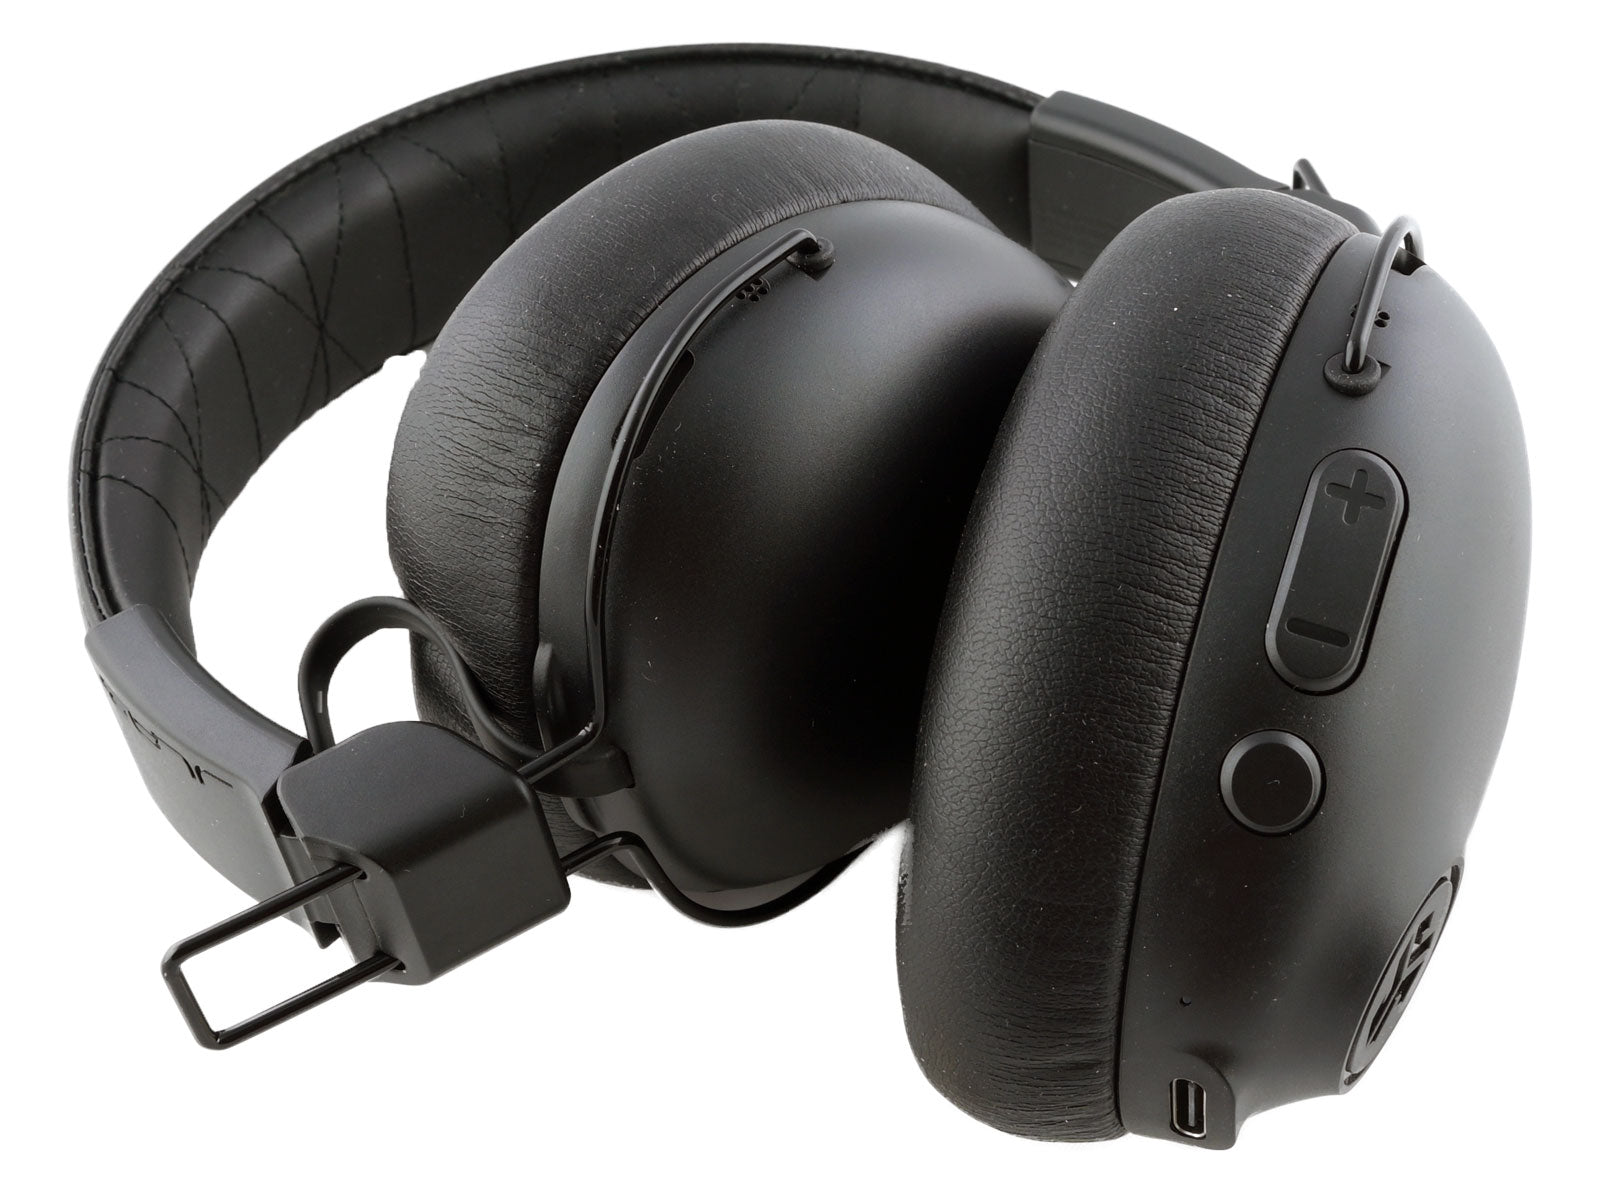  JLab Studio Pro ANC Wireless Over-Ear Kopfhörer Die schwarzen Over-Ear-Kopfhörer liegen zusammengeklappt da und zeigen Kissen und Kopfbügeldetails in minimalistischem Design. Der weiße Hintergrund betont ihre schlanke, kompakte Form.